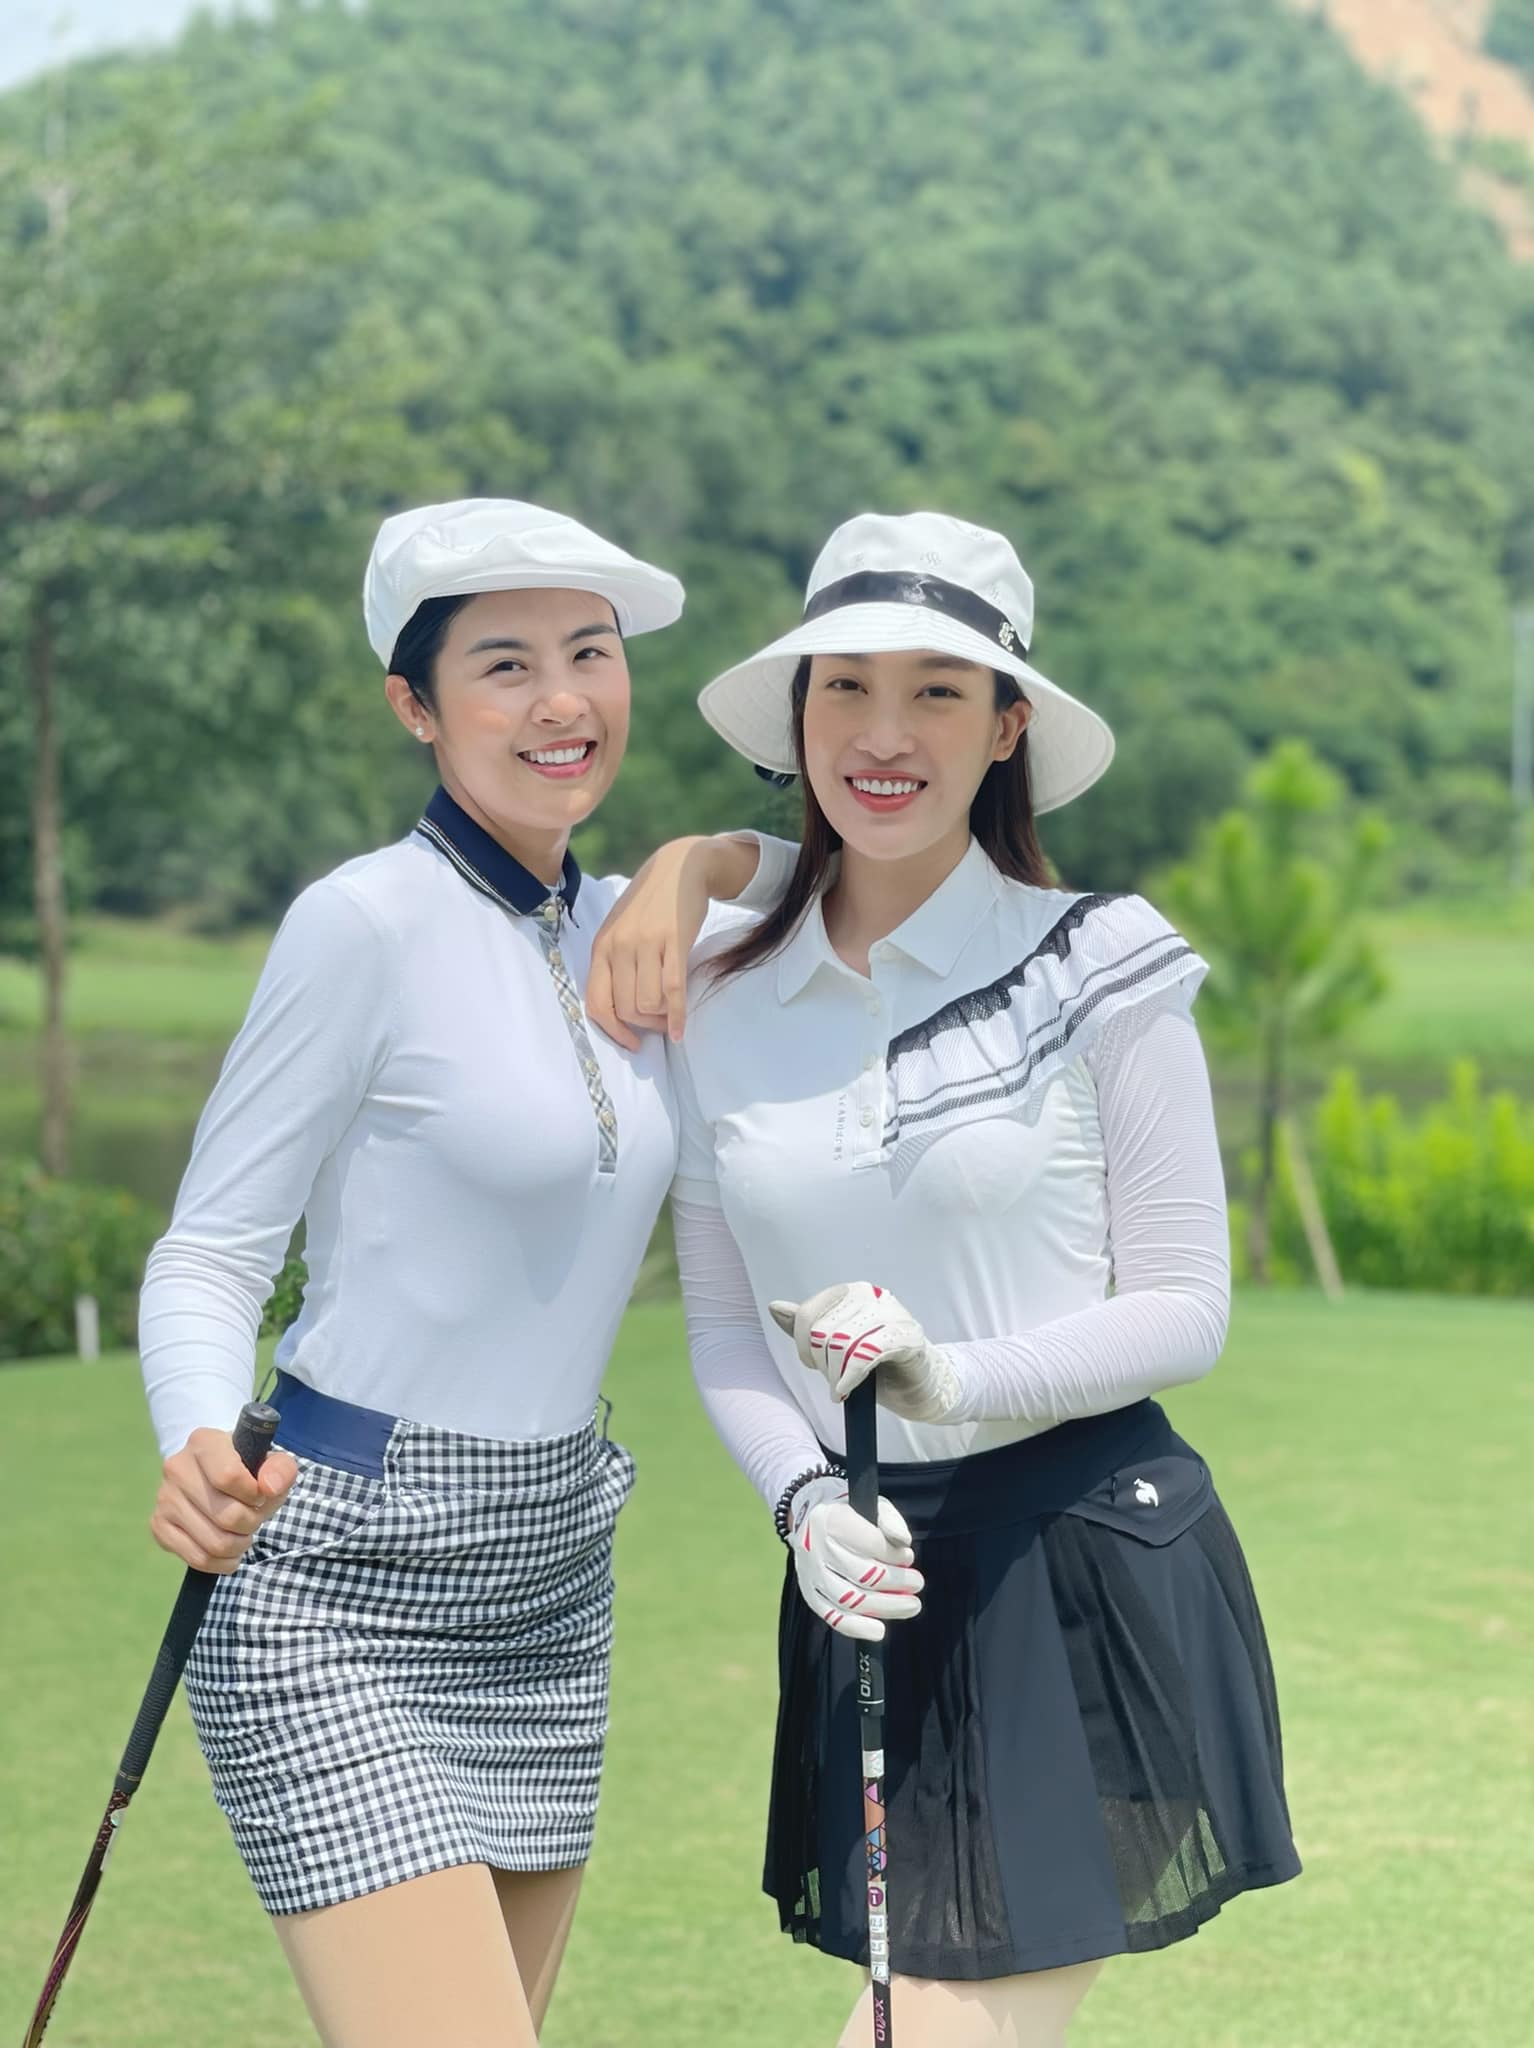 Hoa hậu Ngọc Hân đi chơi golf cùng Hoa hậu Đỗ Mỹ Linh. Đây là môn thể thao yêu thích của các người đẹp để giữ dáng, rèn luyện sức khỏe.